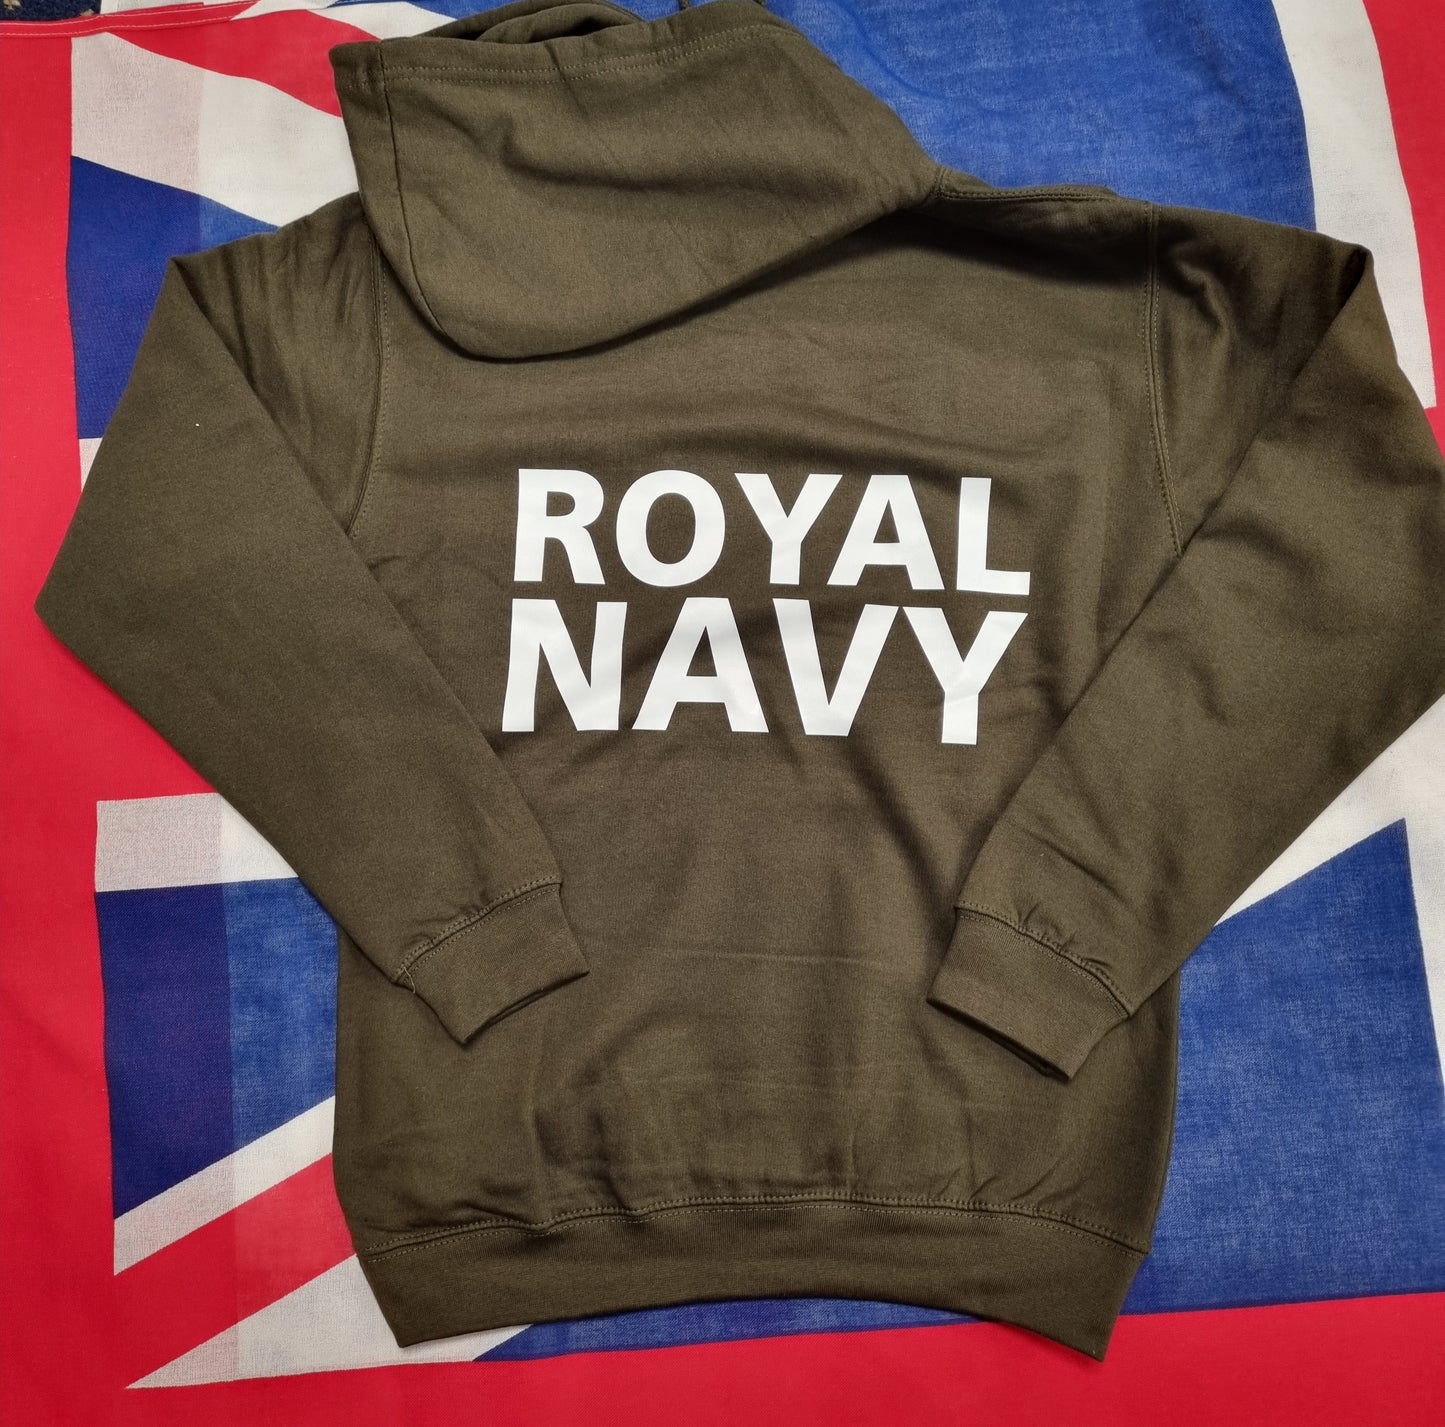 Royal Navy Hoodies